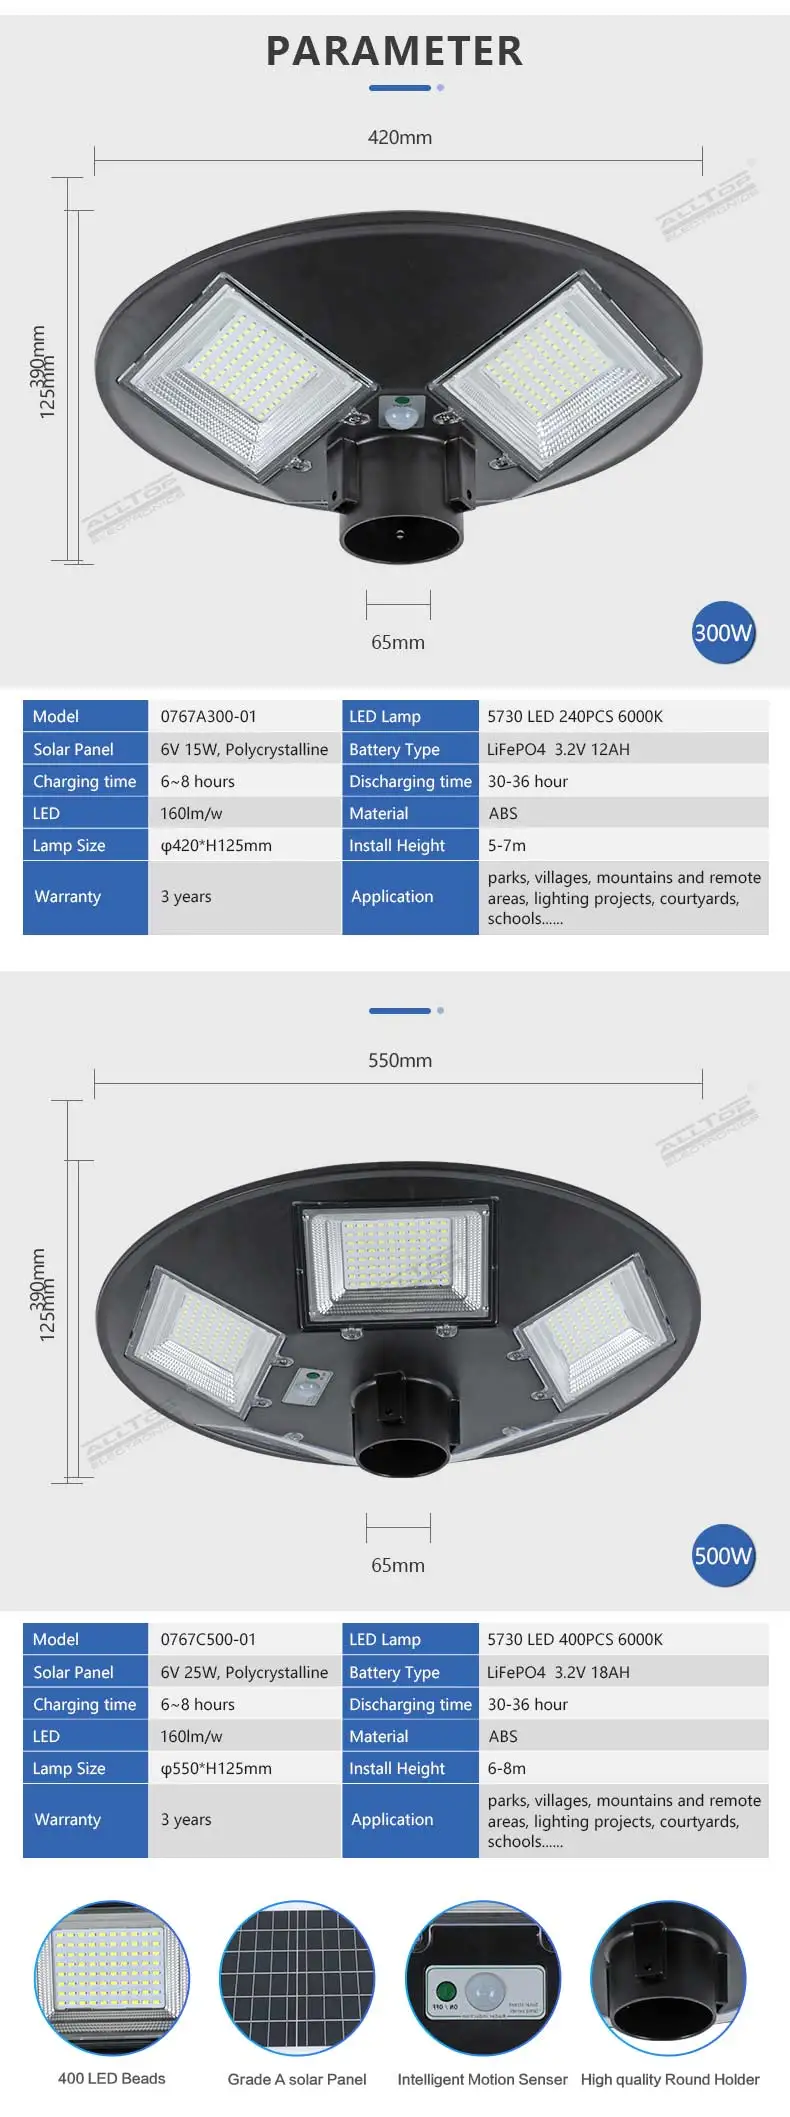 ALLTOP Super brightness outdoor lighting ABS waterproof ip65 all in one 300watt 500watt solar garden led light